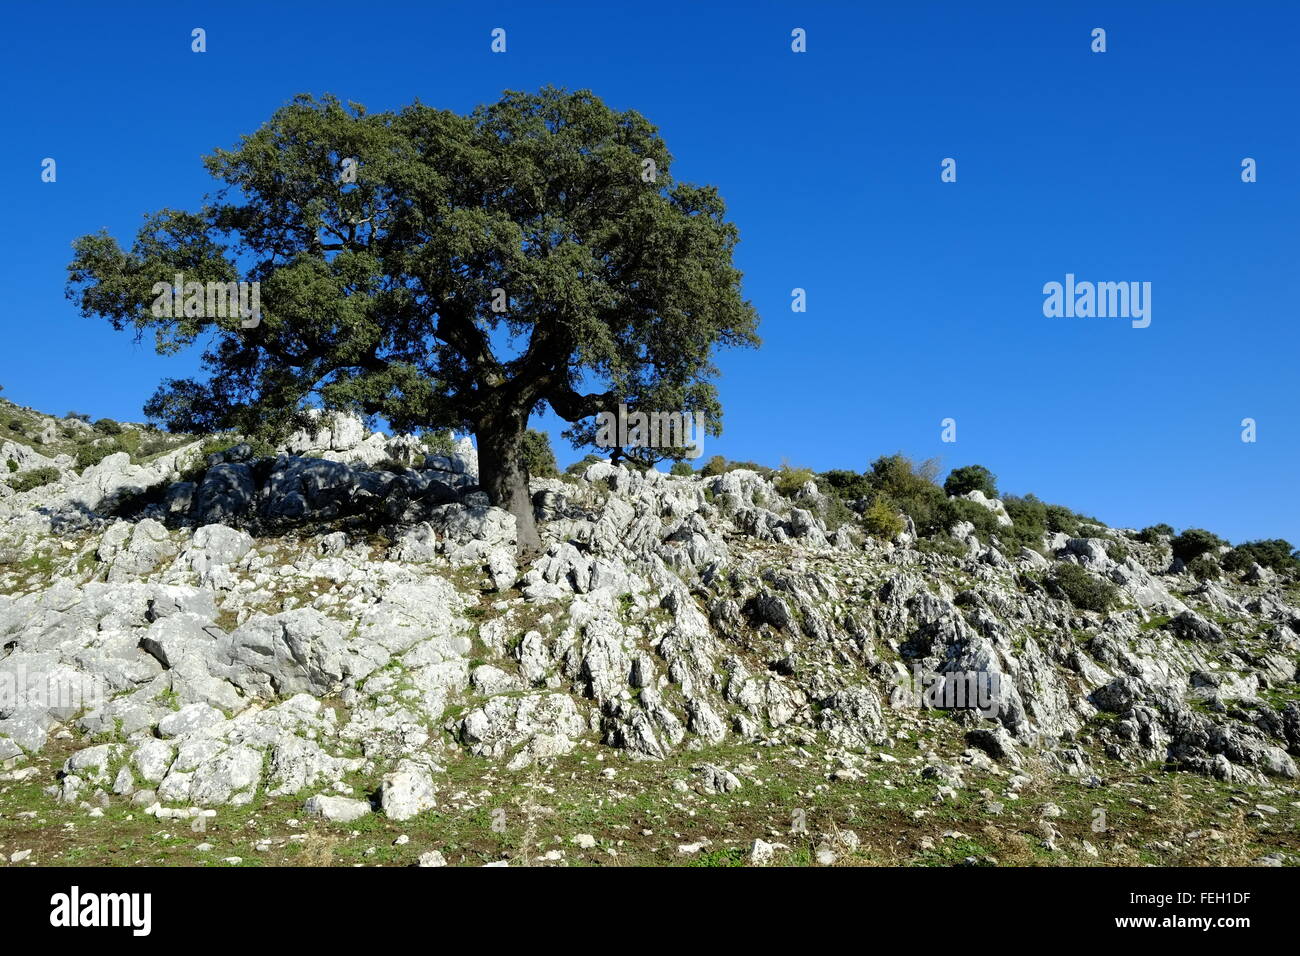 Sehr alte knorrige Steineiche Baum. Navazuelo, Córdoba, Andalusien. Spanien Stockfoto